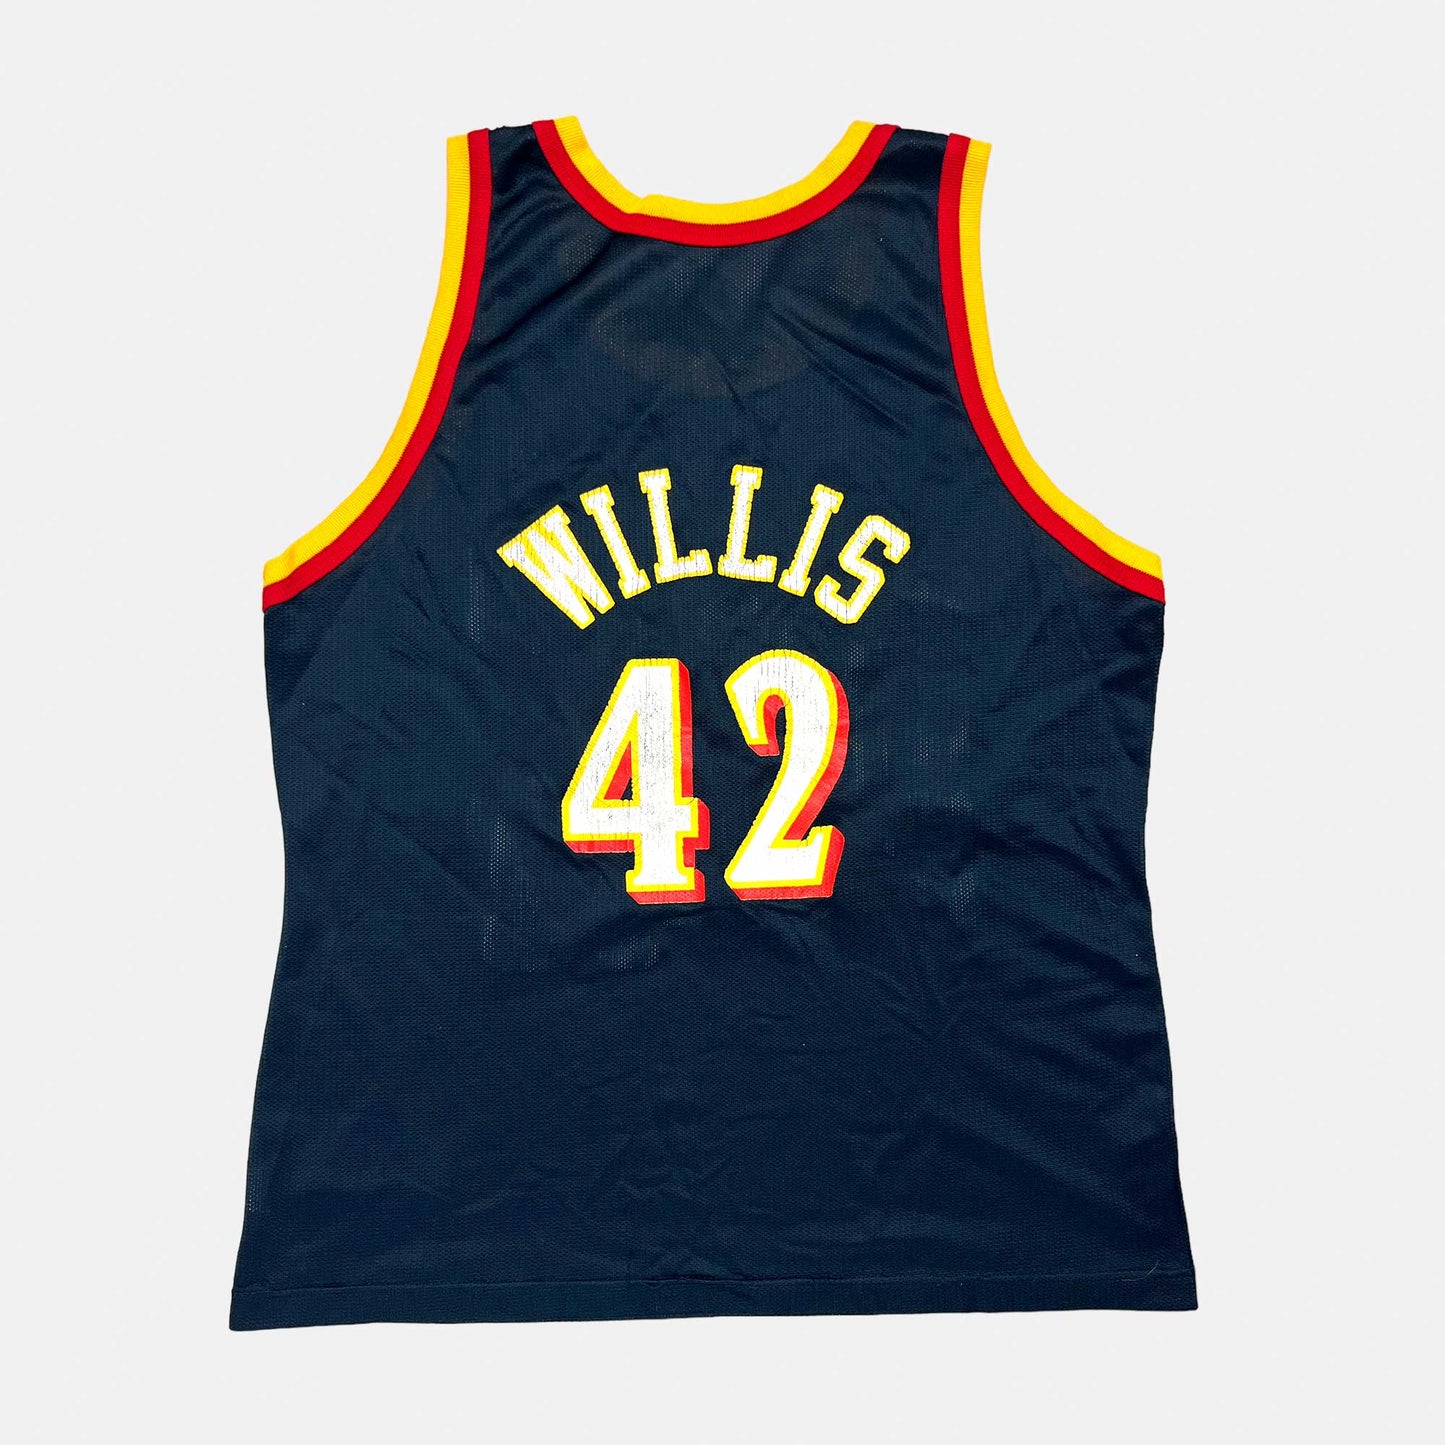 Atlanta Hawks - Kevin Willis - Größe L / US44 - Champion - NBA Trikot